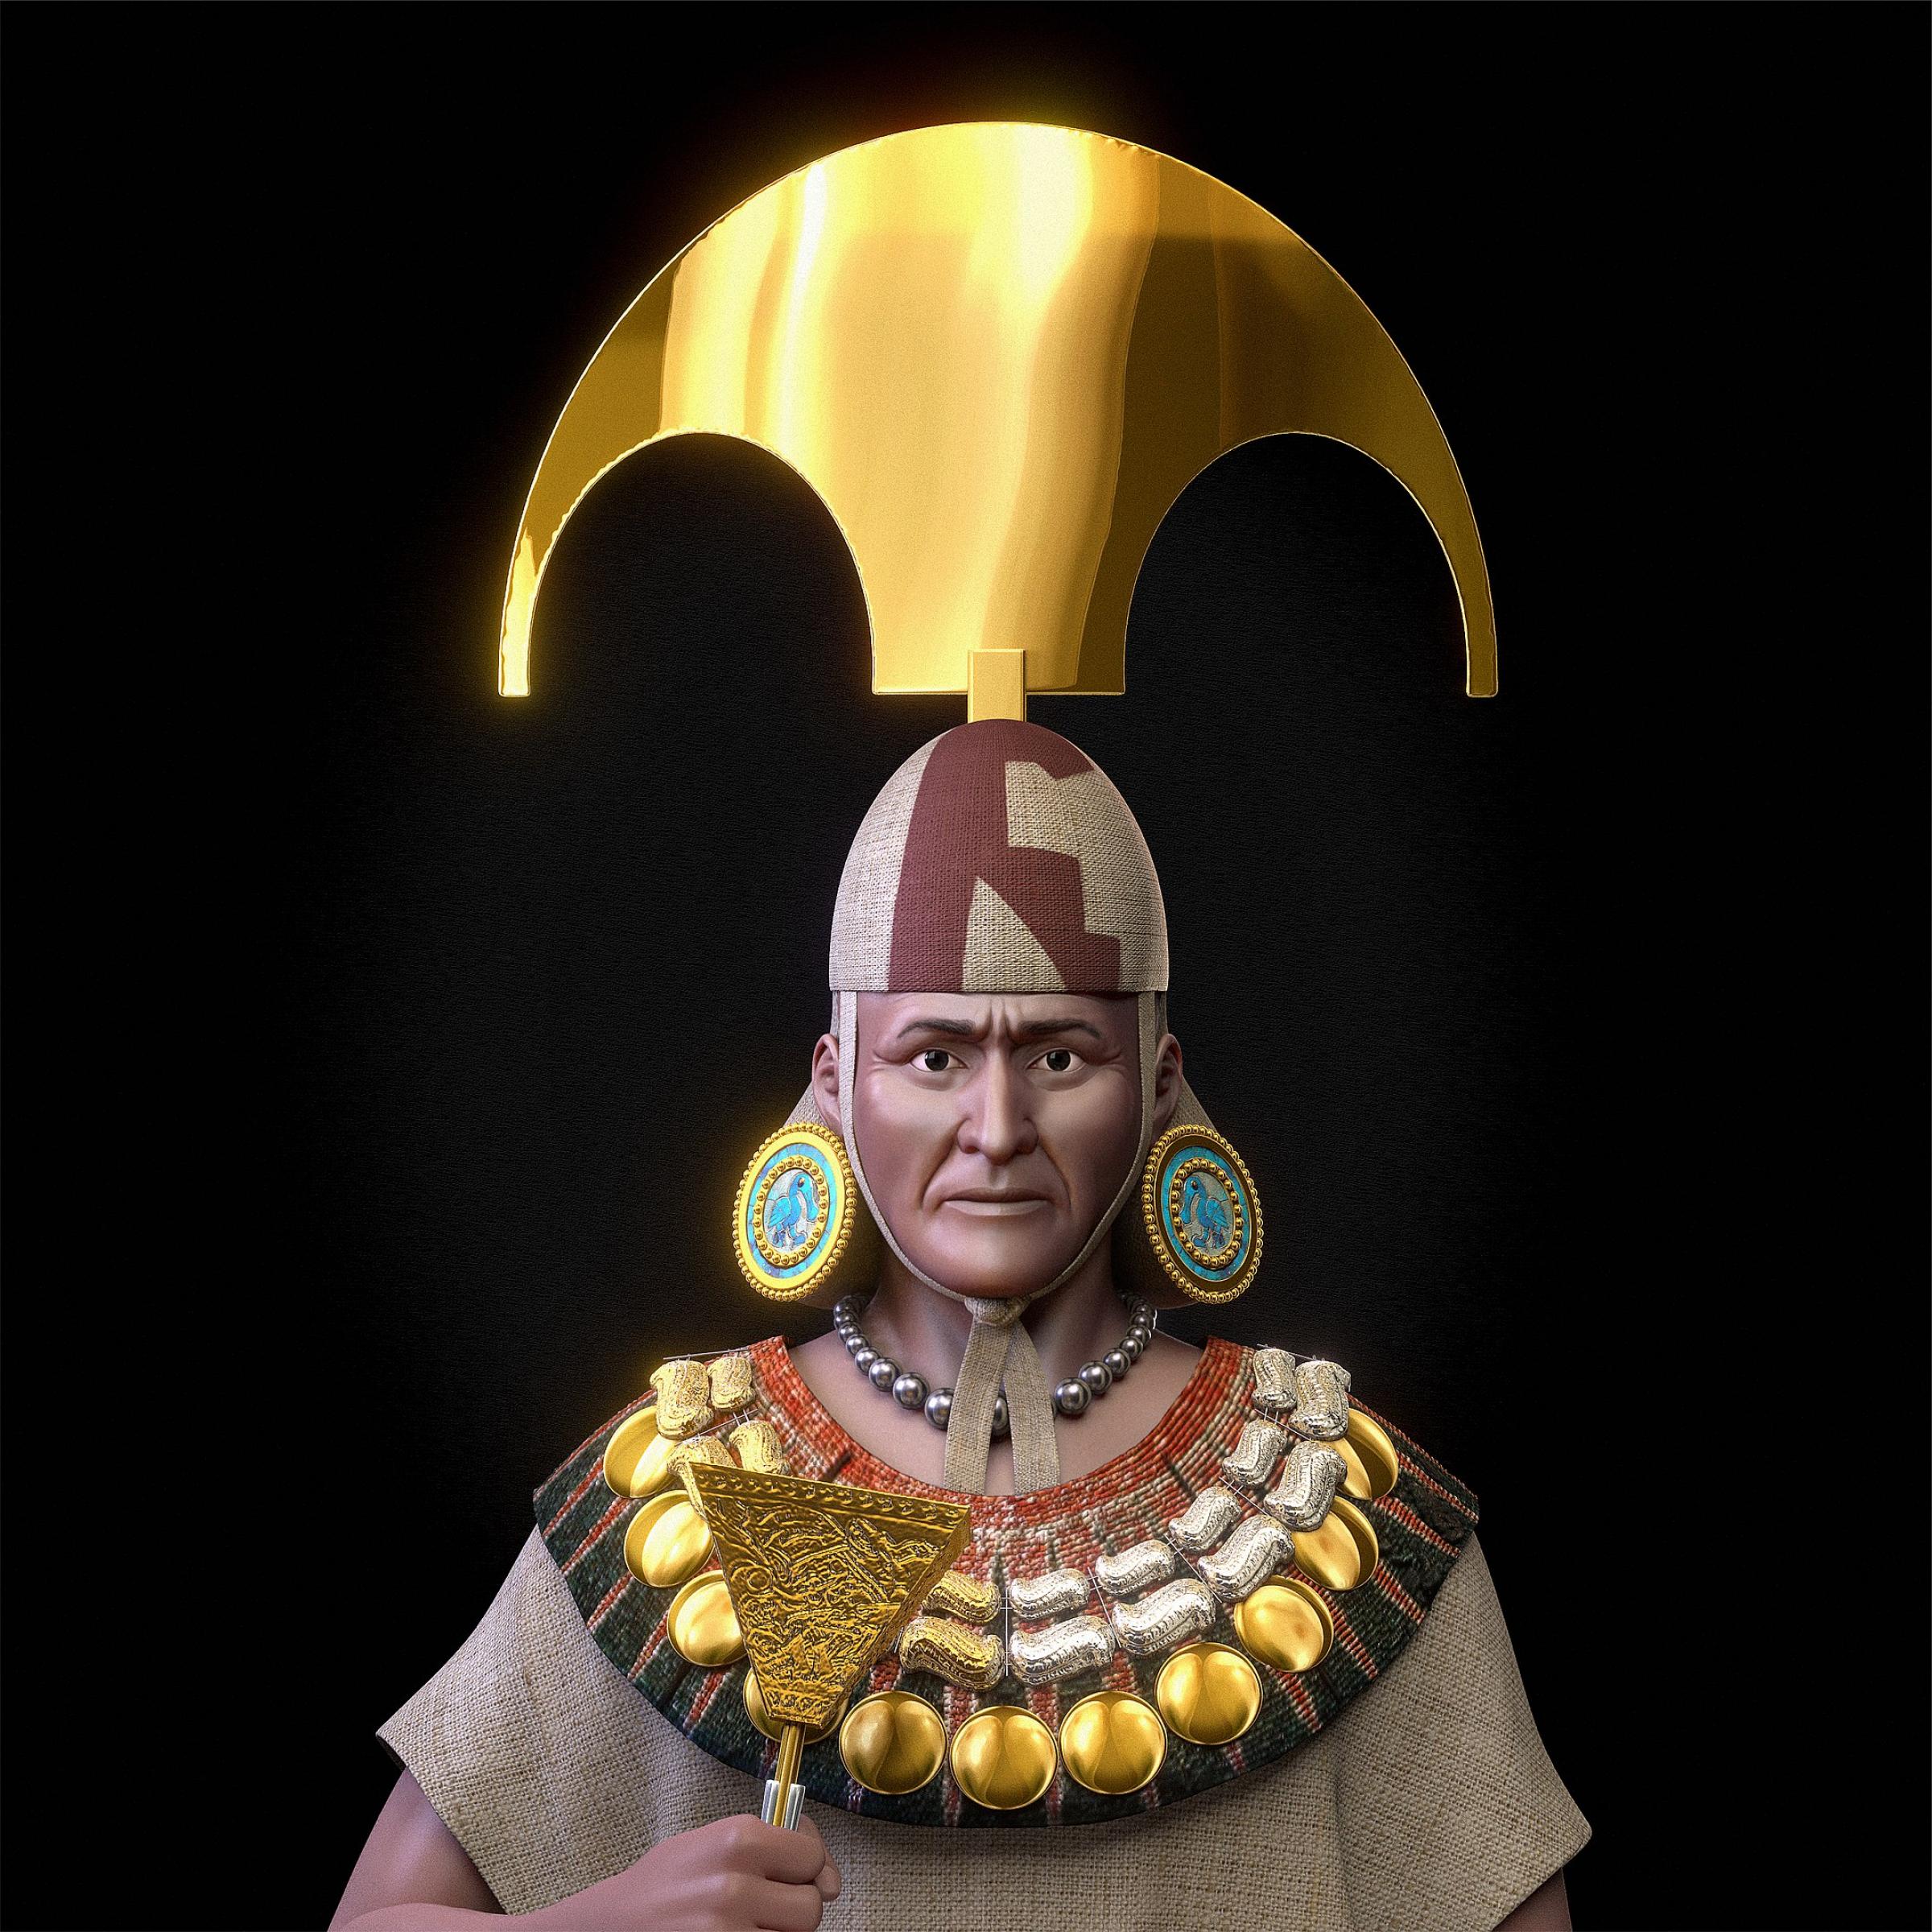 Figur mit einer prägnanten Gesichtszügen in einer forensischen Gesichtsrekonstruktion, geschmückt mit einem goldenen, halbmondartigen Kopfschmuck, Ohrgehängen und einer Brustkette aus silbernem und goldenem Schmuck